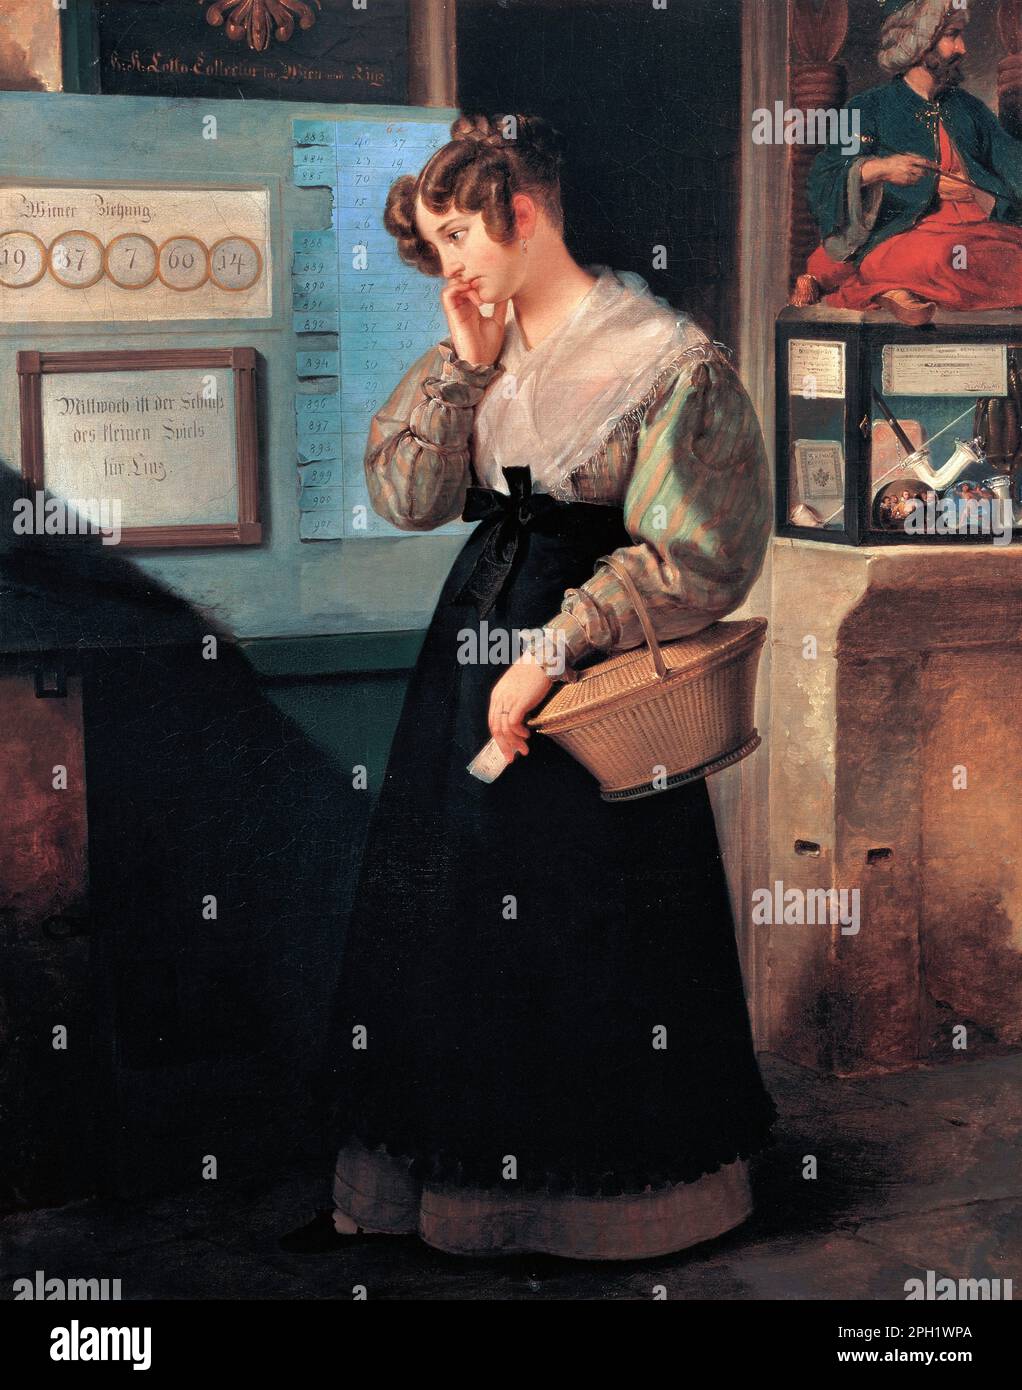 Ragazza di fronte alla volta della Lotteria dell'artista austriaco Peter Fendi (1796-1842), olio su tela, 1829 Foto Stock